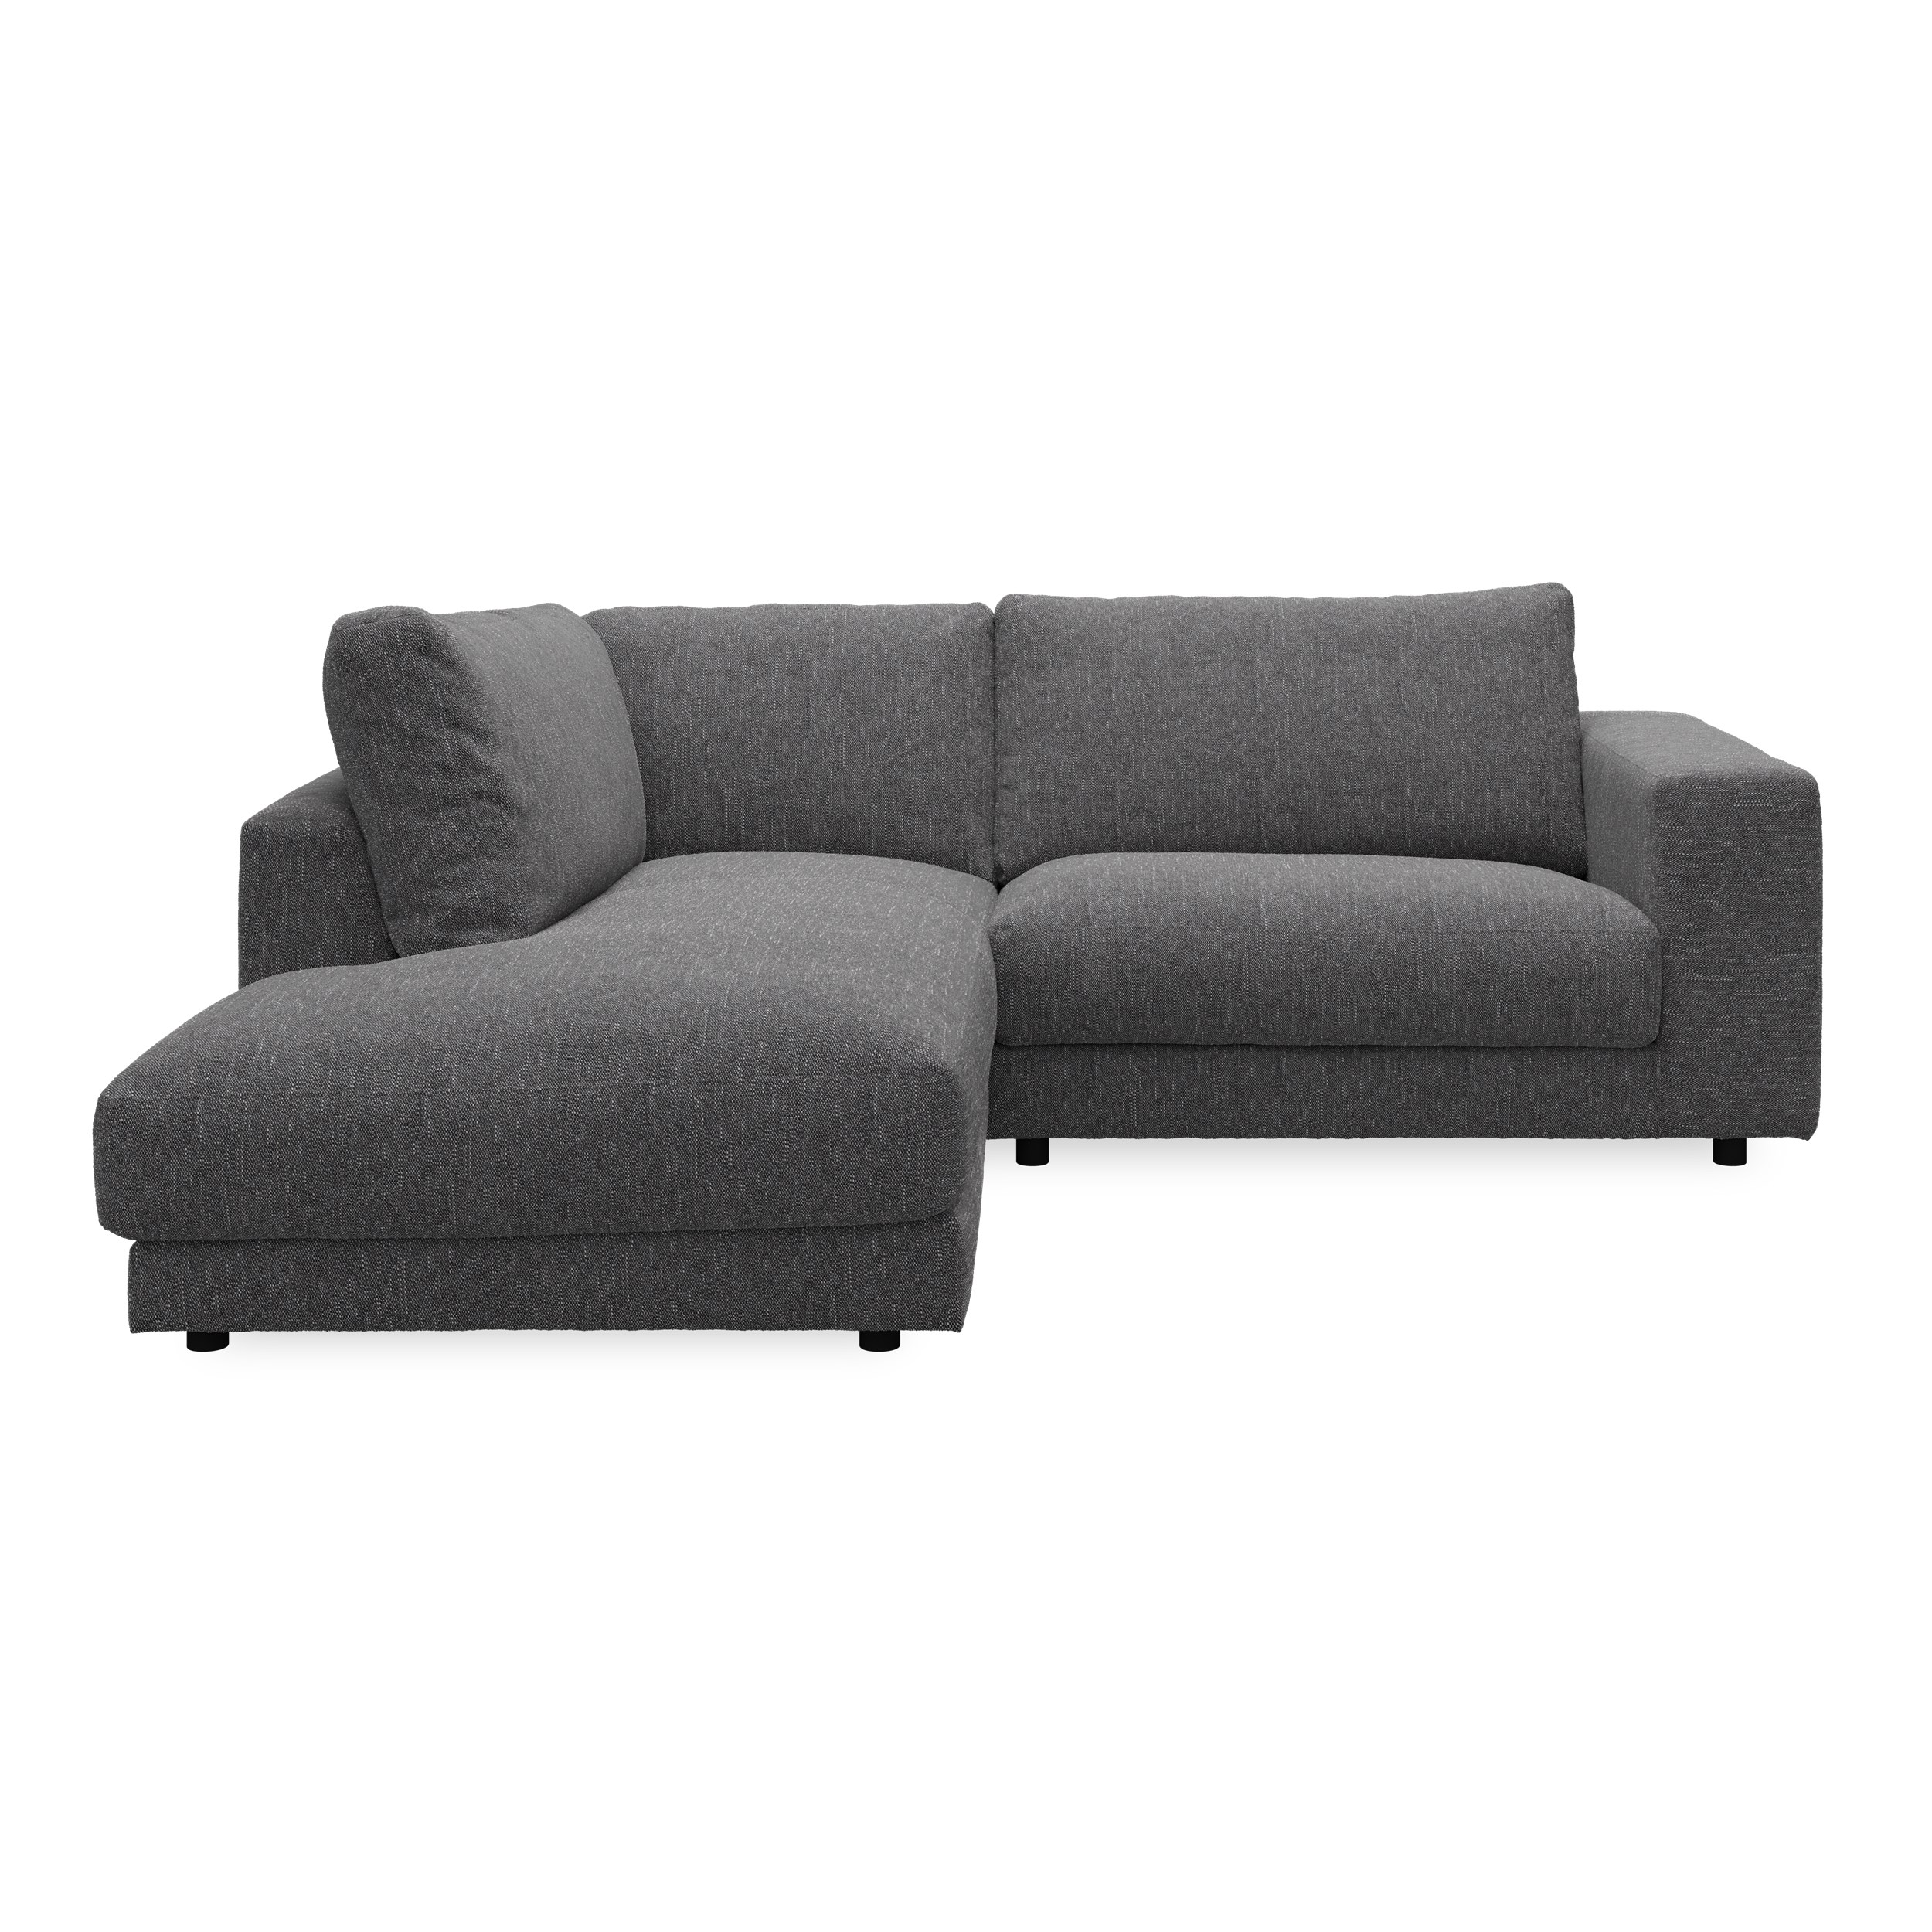 Bennent vänstervänd soffa med divan - Yelda Grey klädsel, ben i svart plast och S:skum/fib/din/sili R:Dun/skum